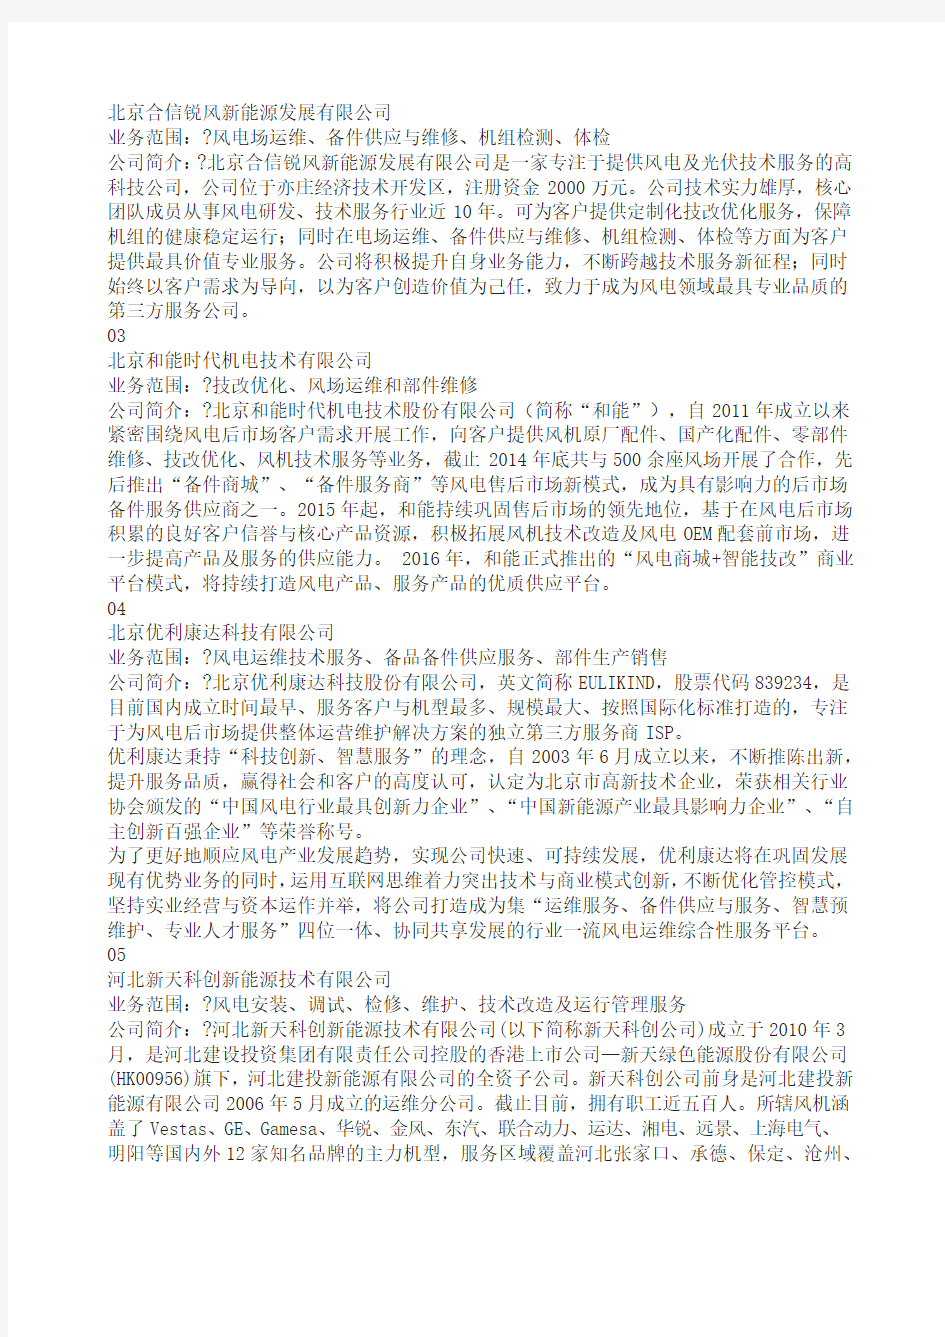 中国风电后市场第三方运维服务企业名录版